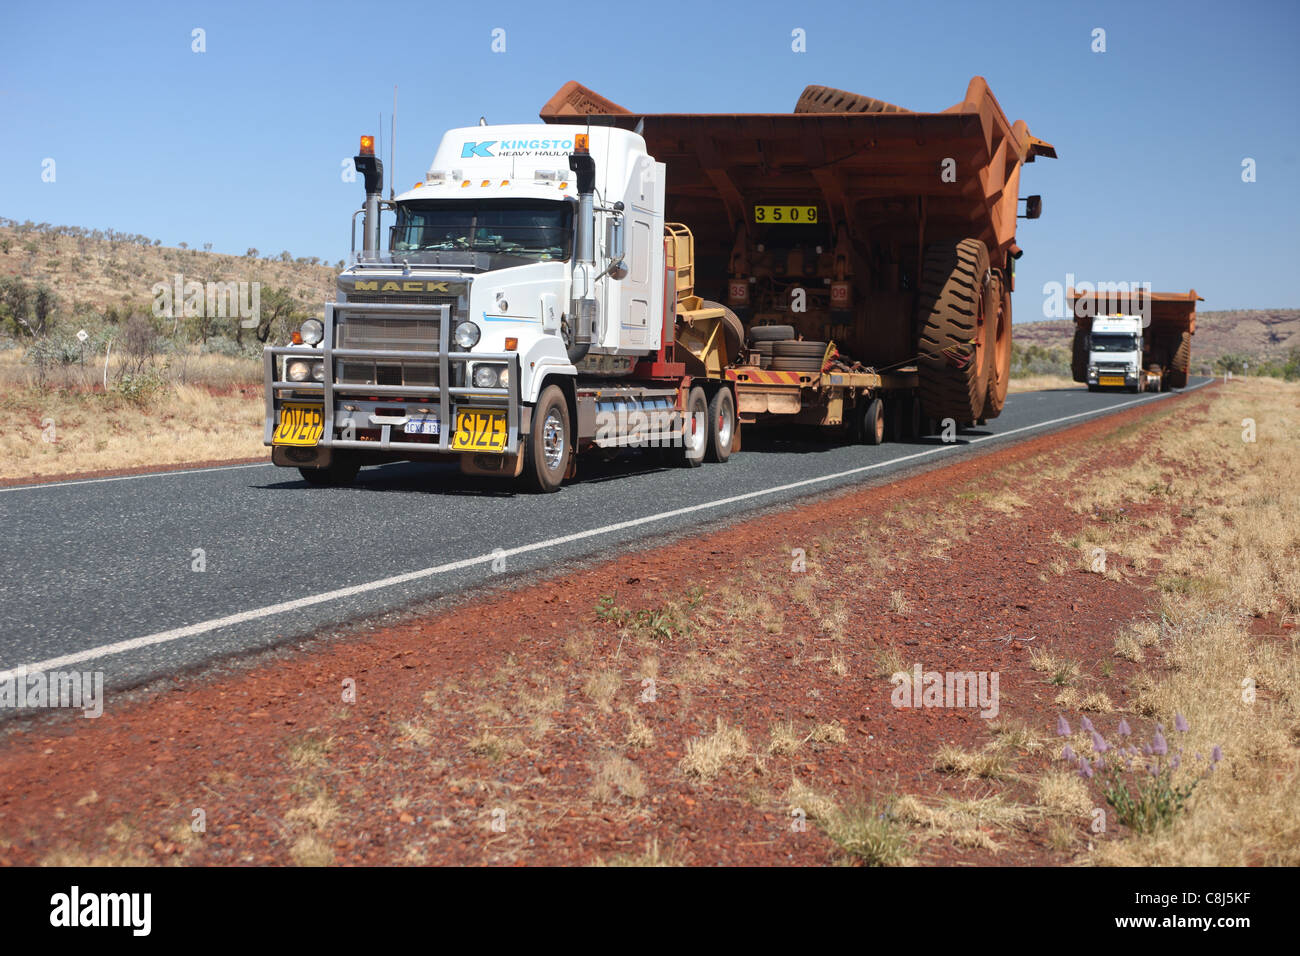 Road train, Australia, Outback, verso il basso, sotto al carrello, gigantesche, Giant, carico pesante Foto Stock